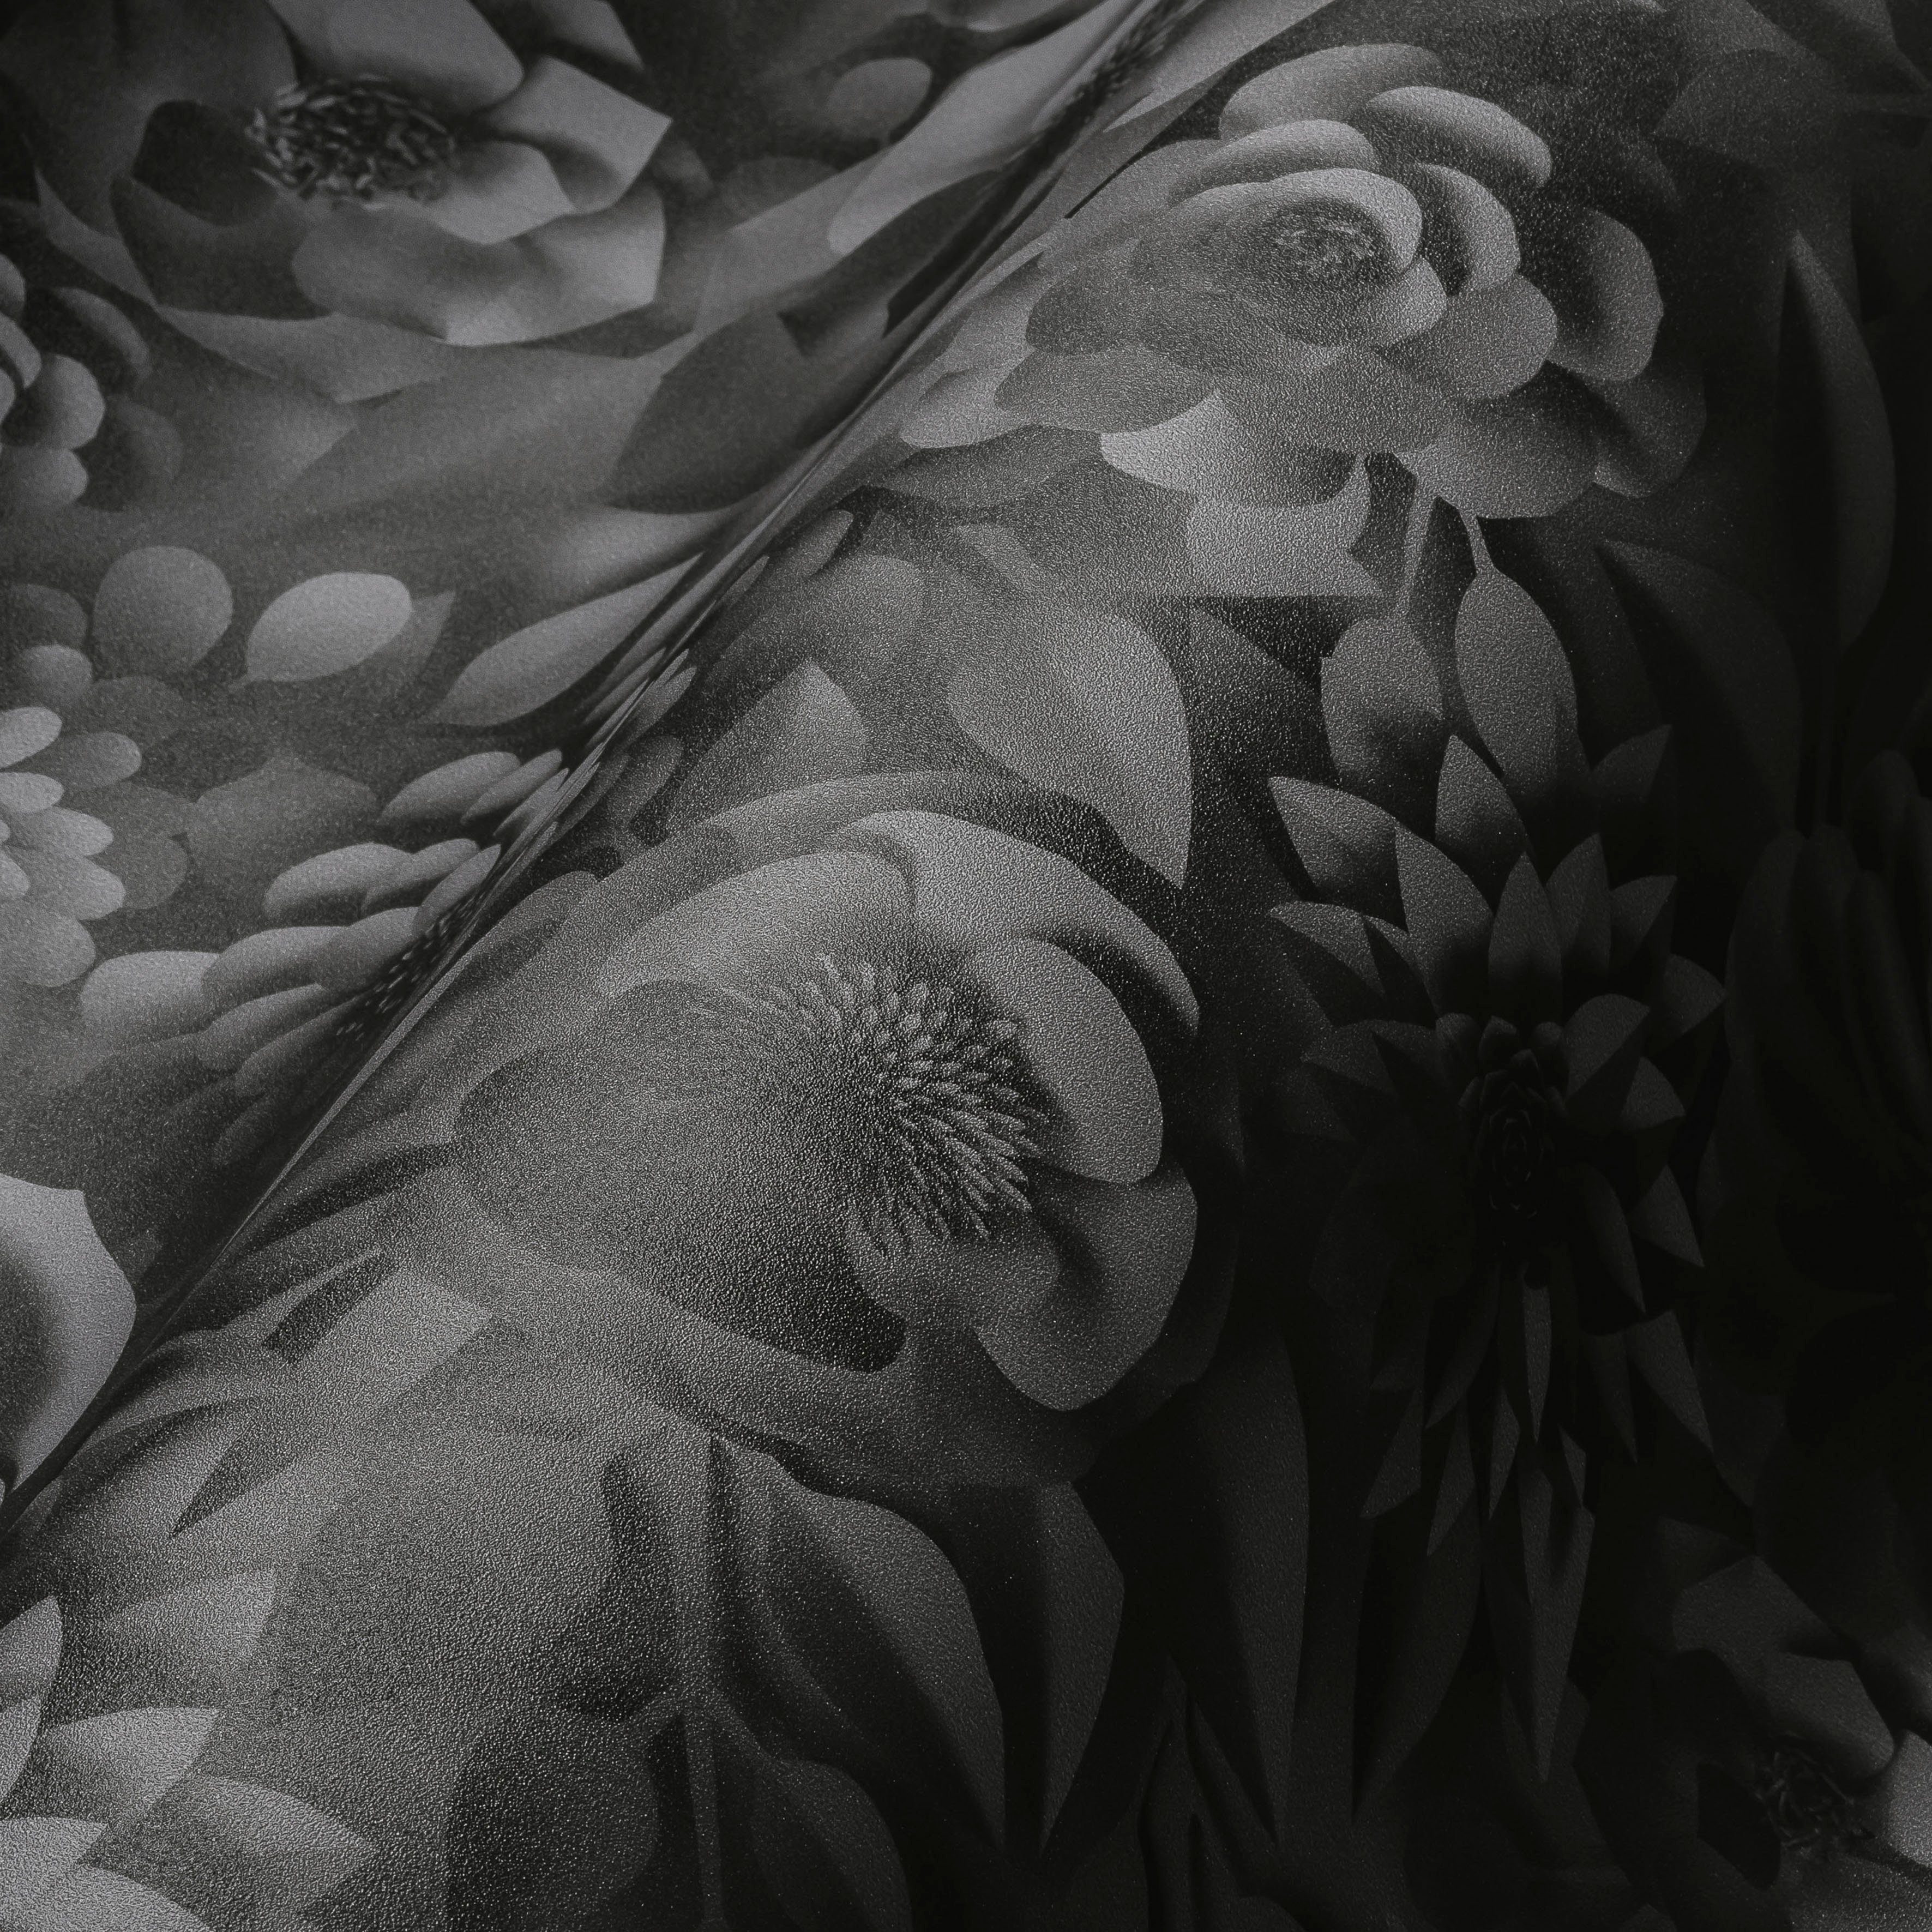 Optik, PintWalls 3D A.S. Vliestapete Blumen schwarz/grau glatt, St), Création Blumenwand (1 matt,